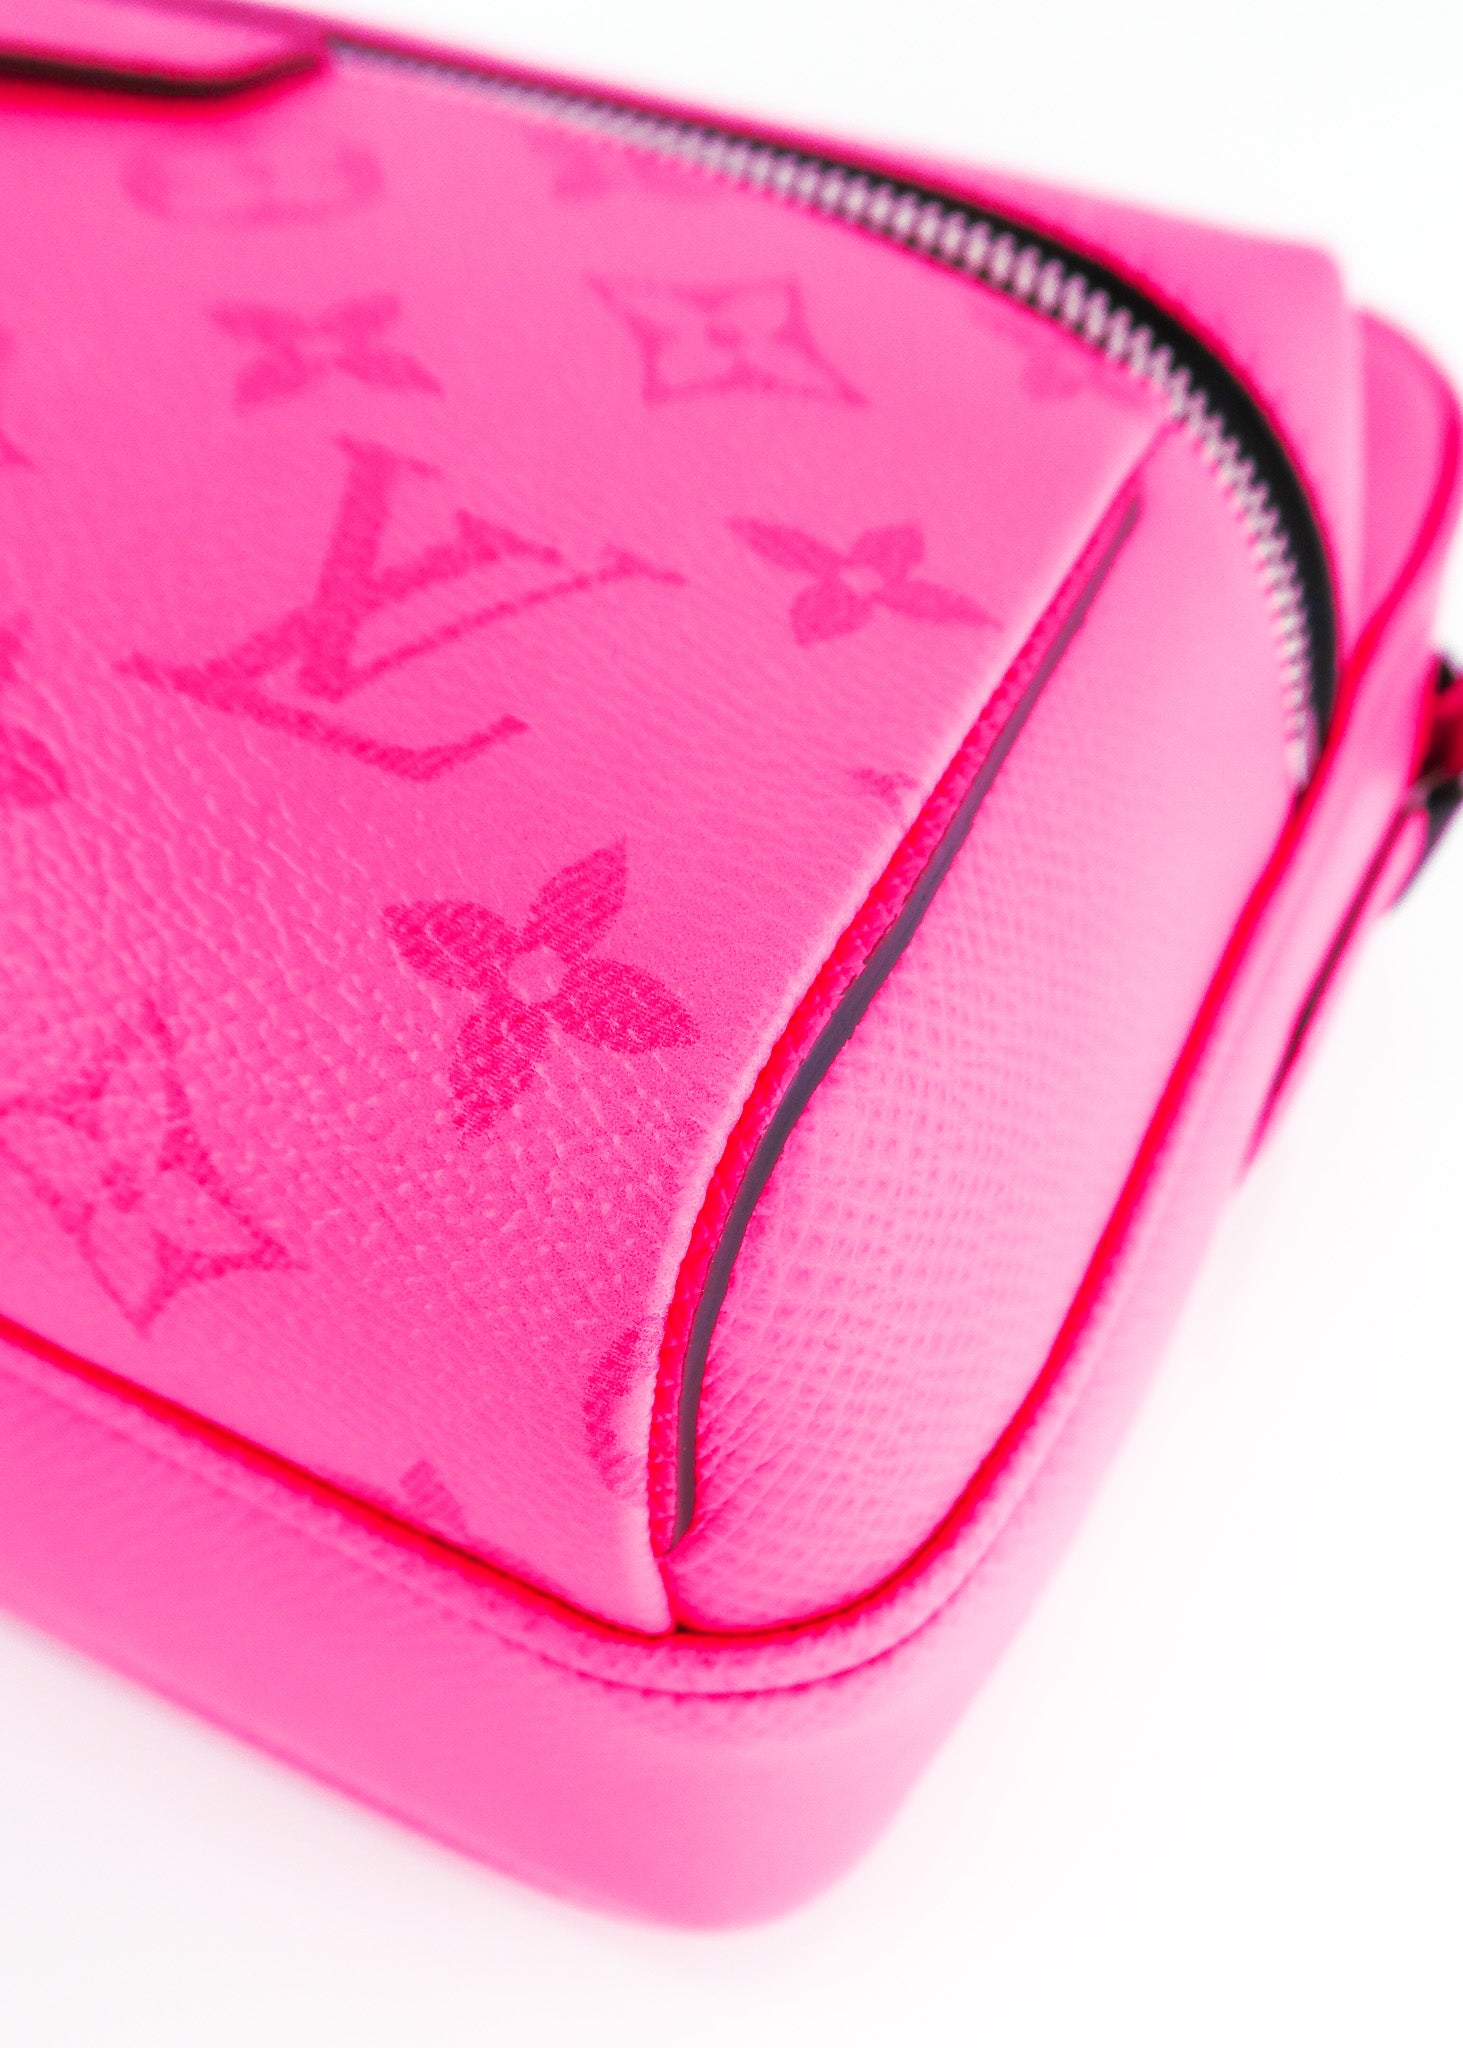 Budget Louis Vuitton Outdoor Messenger Bag Pink/Fuchsia (I don't